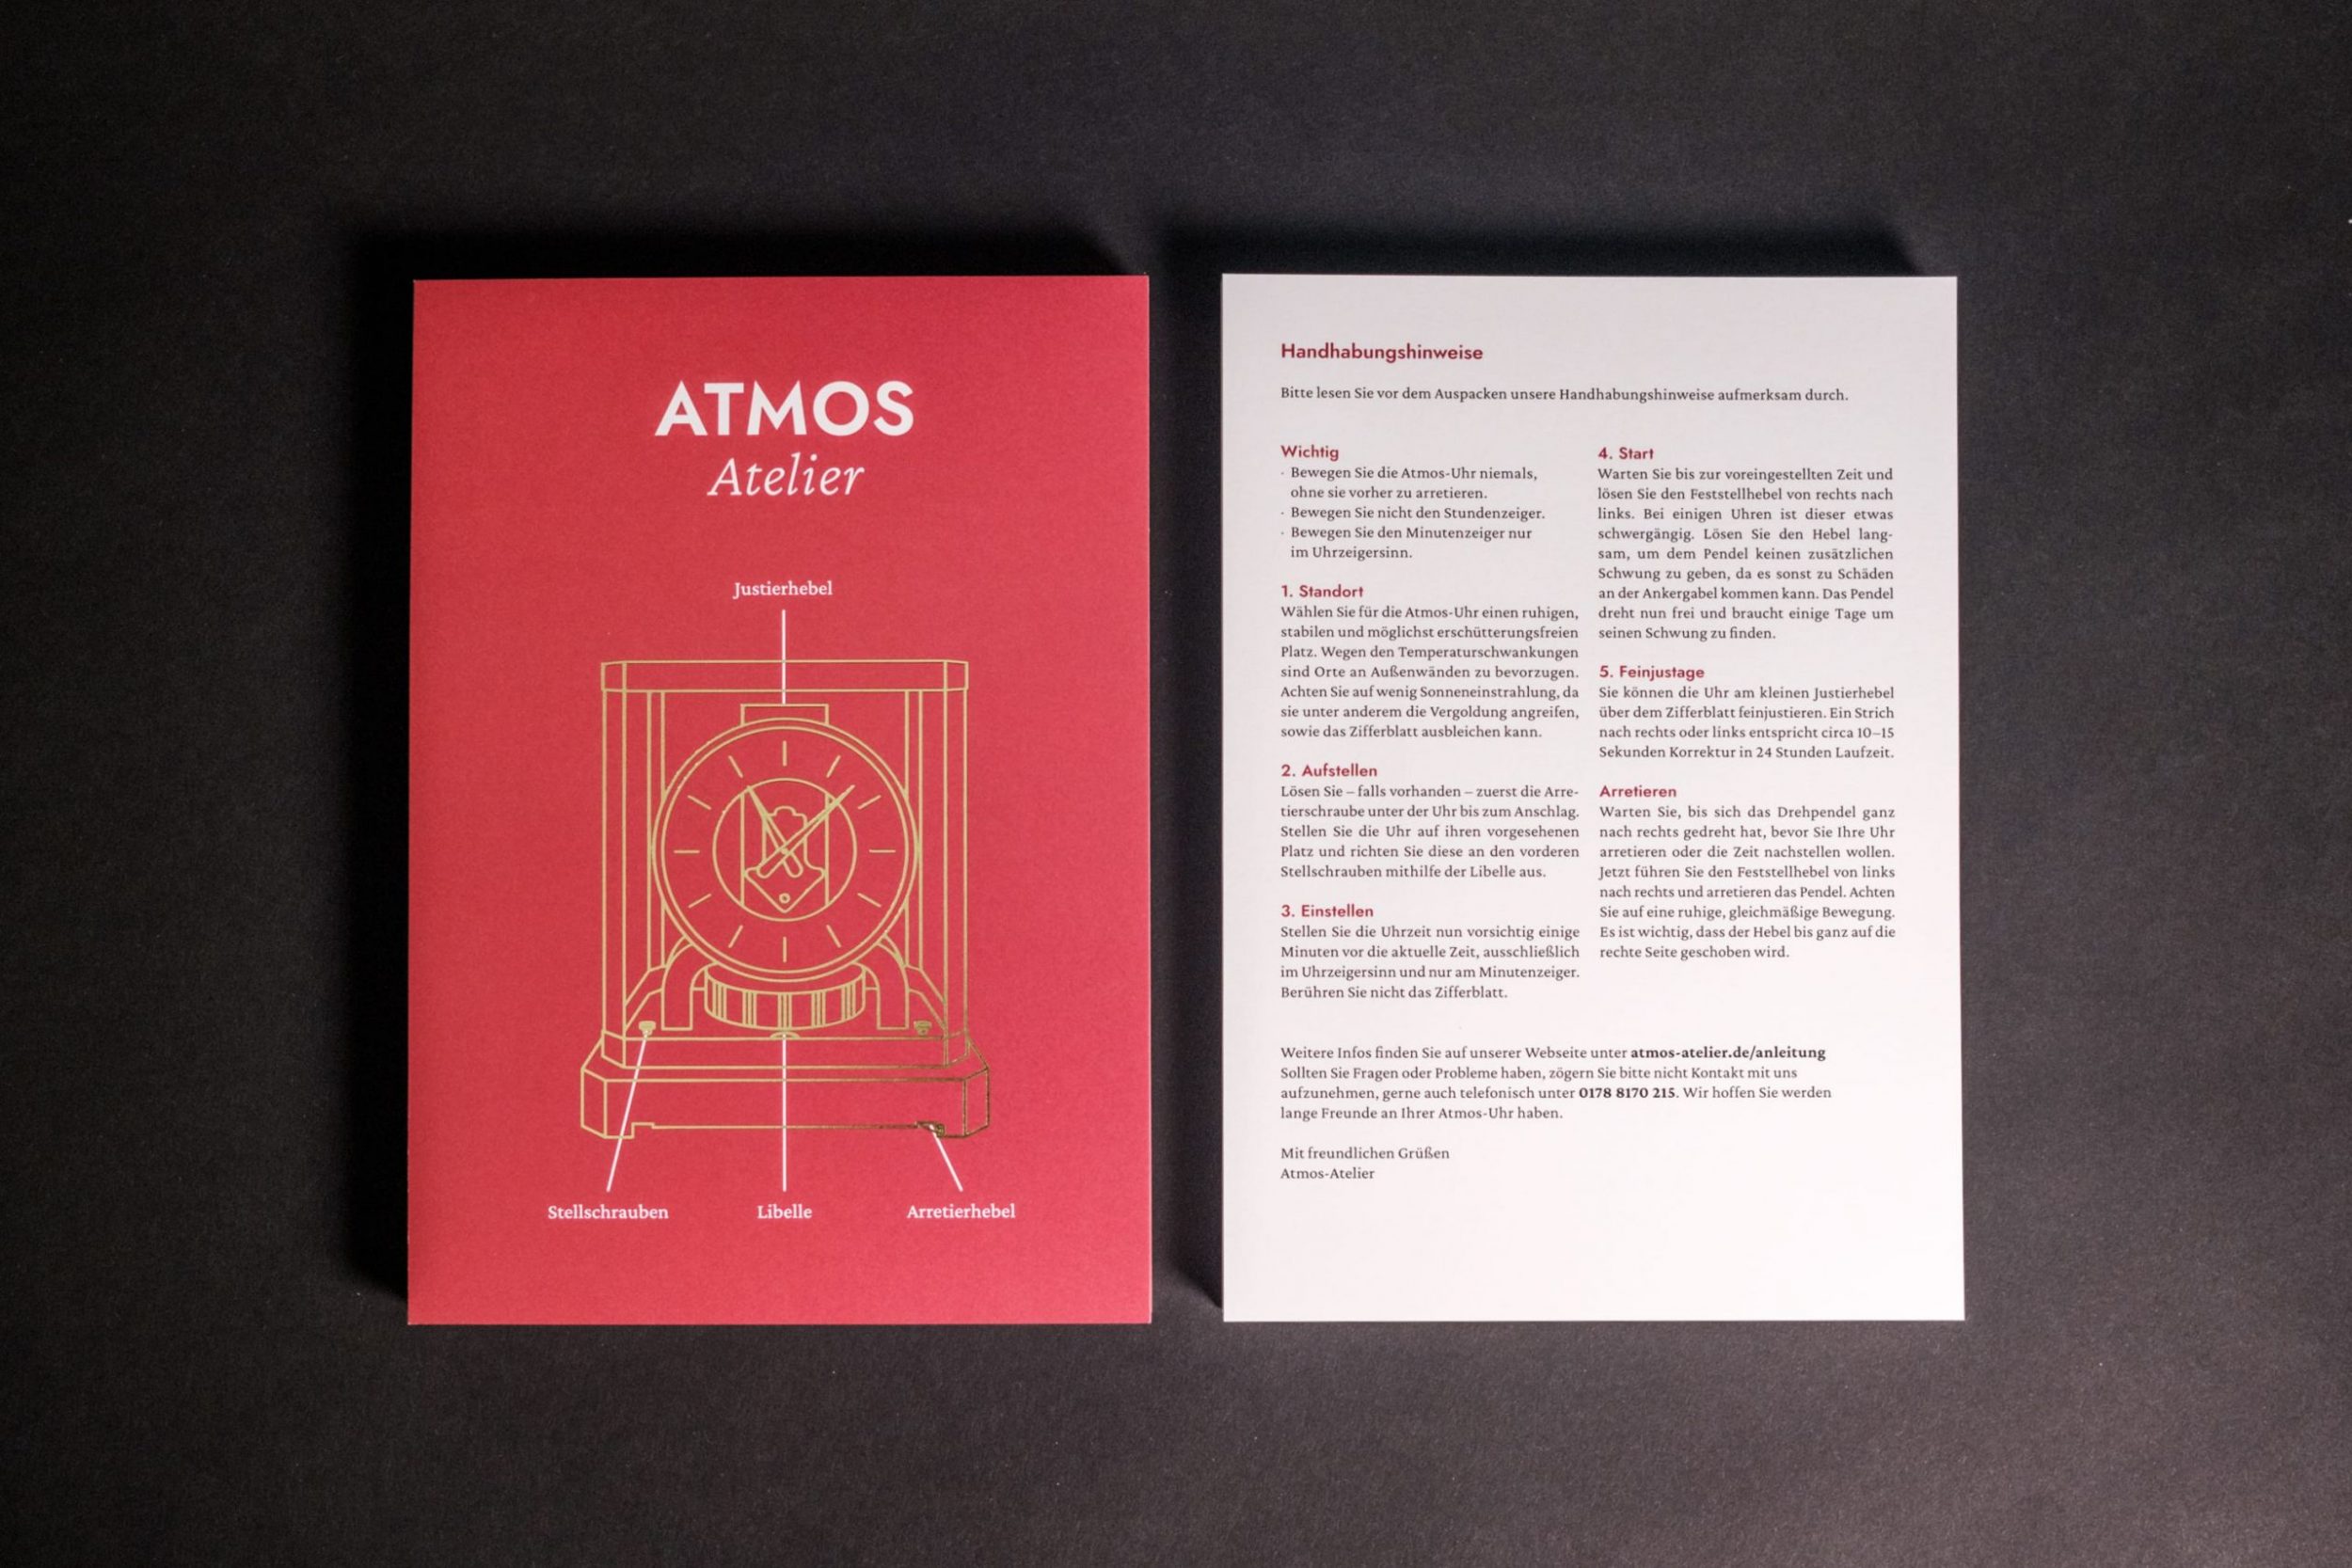 Atmos-Atelier_Handhabungshinweise_04